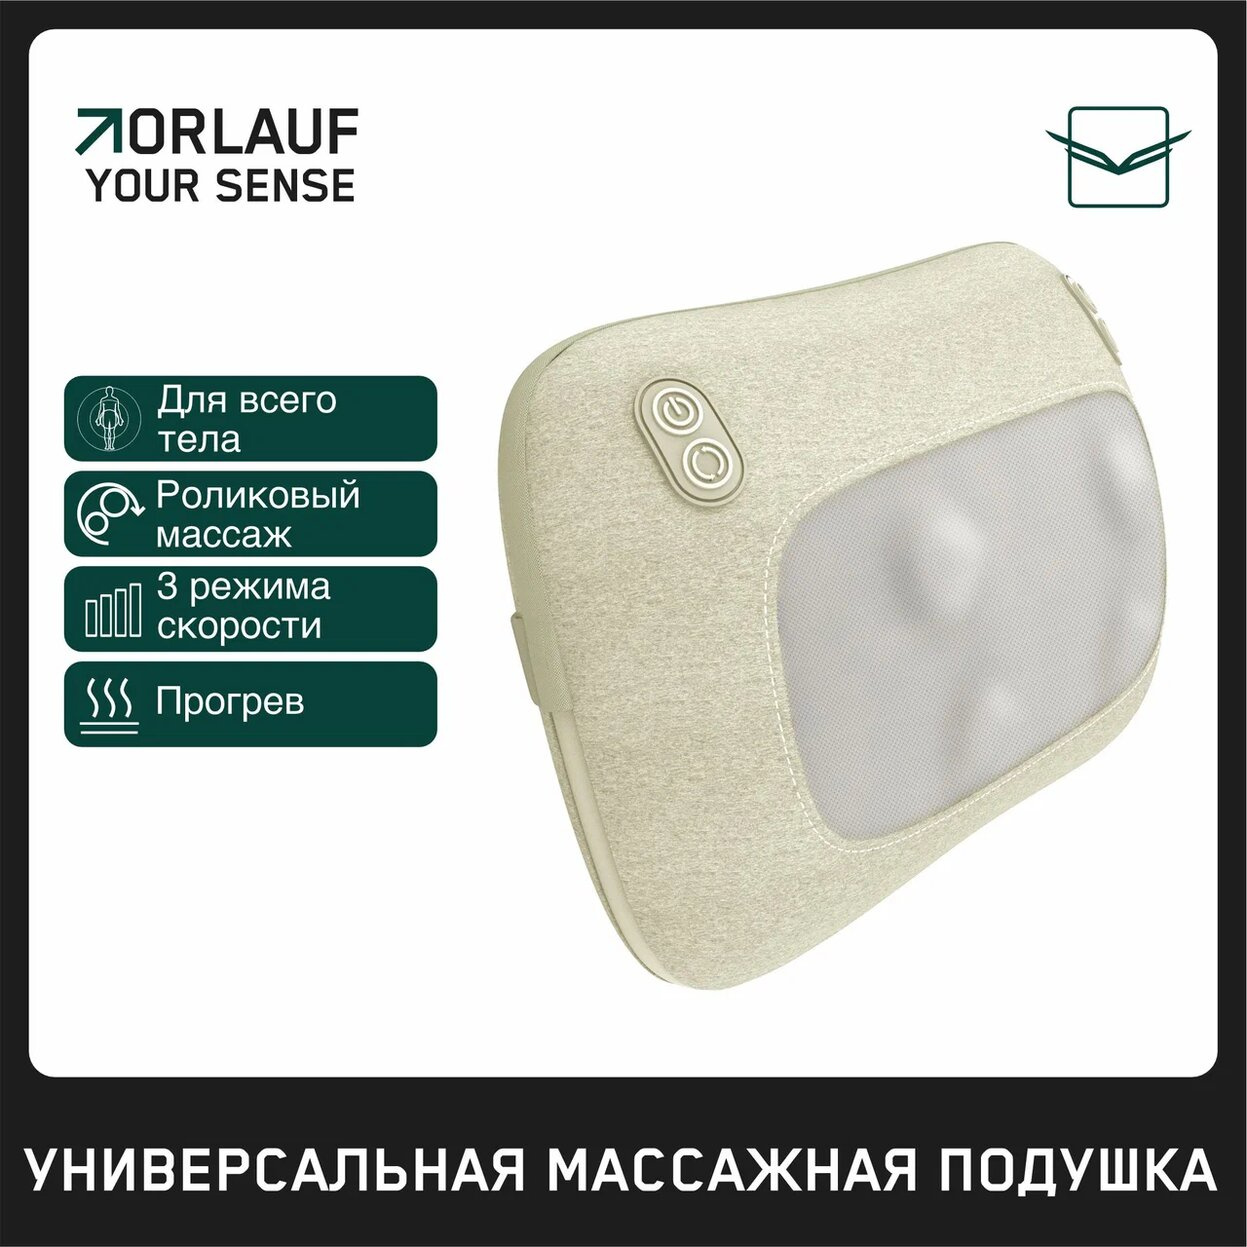 Orlauf Your Sense из каталога массажеров в Москве по цене 9200 ₽